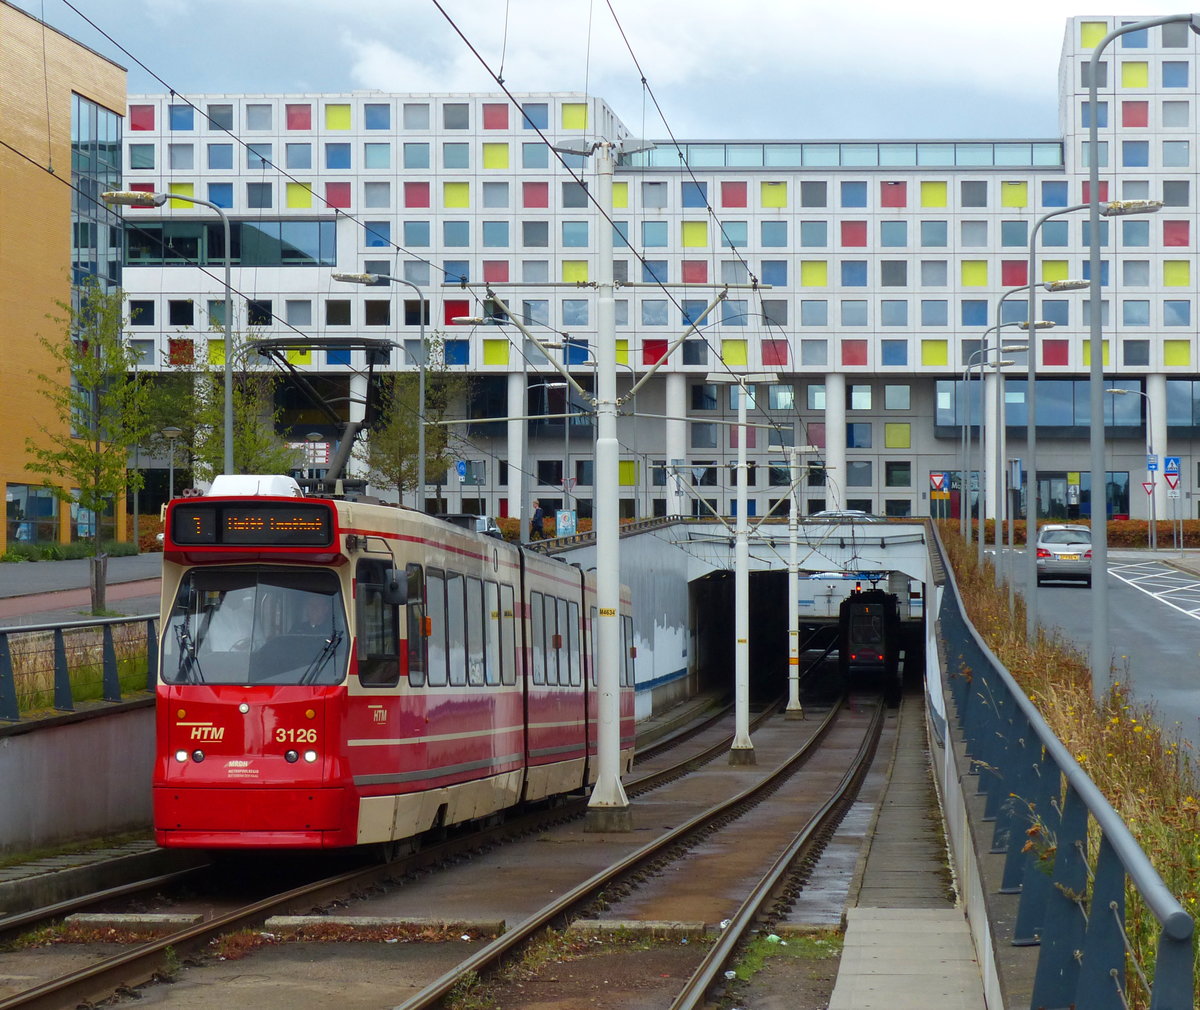 Der Straßenbahntunnel nahe dem Bahnhof Den Haag HS ist mit einem farbenfrohen Haus bebaut, hinter dem die Bahnlinie verläuft. Die verschiedenfarbigen Fenster ergeben interessante Fotomotive auch vom Bahnsteig aus. Fahrzeug 3126 der HTM ist auf dem Weg nach Delft. 25.8.2018, Den Haag